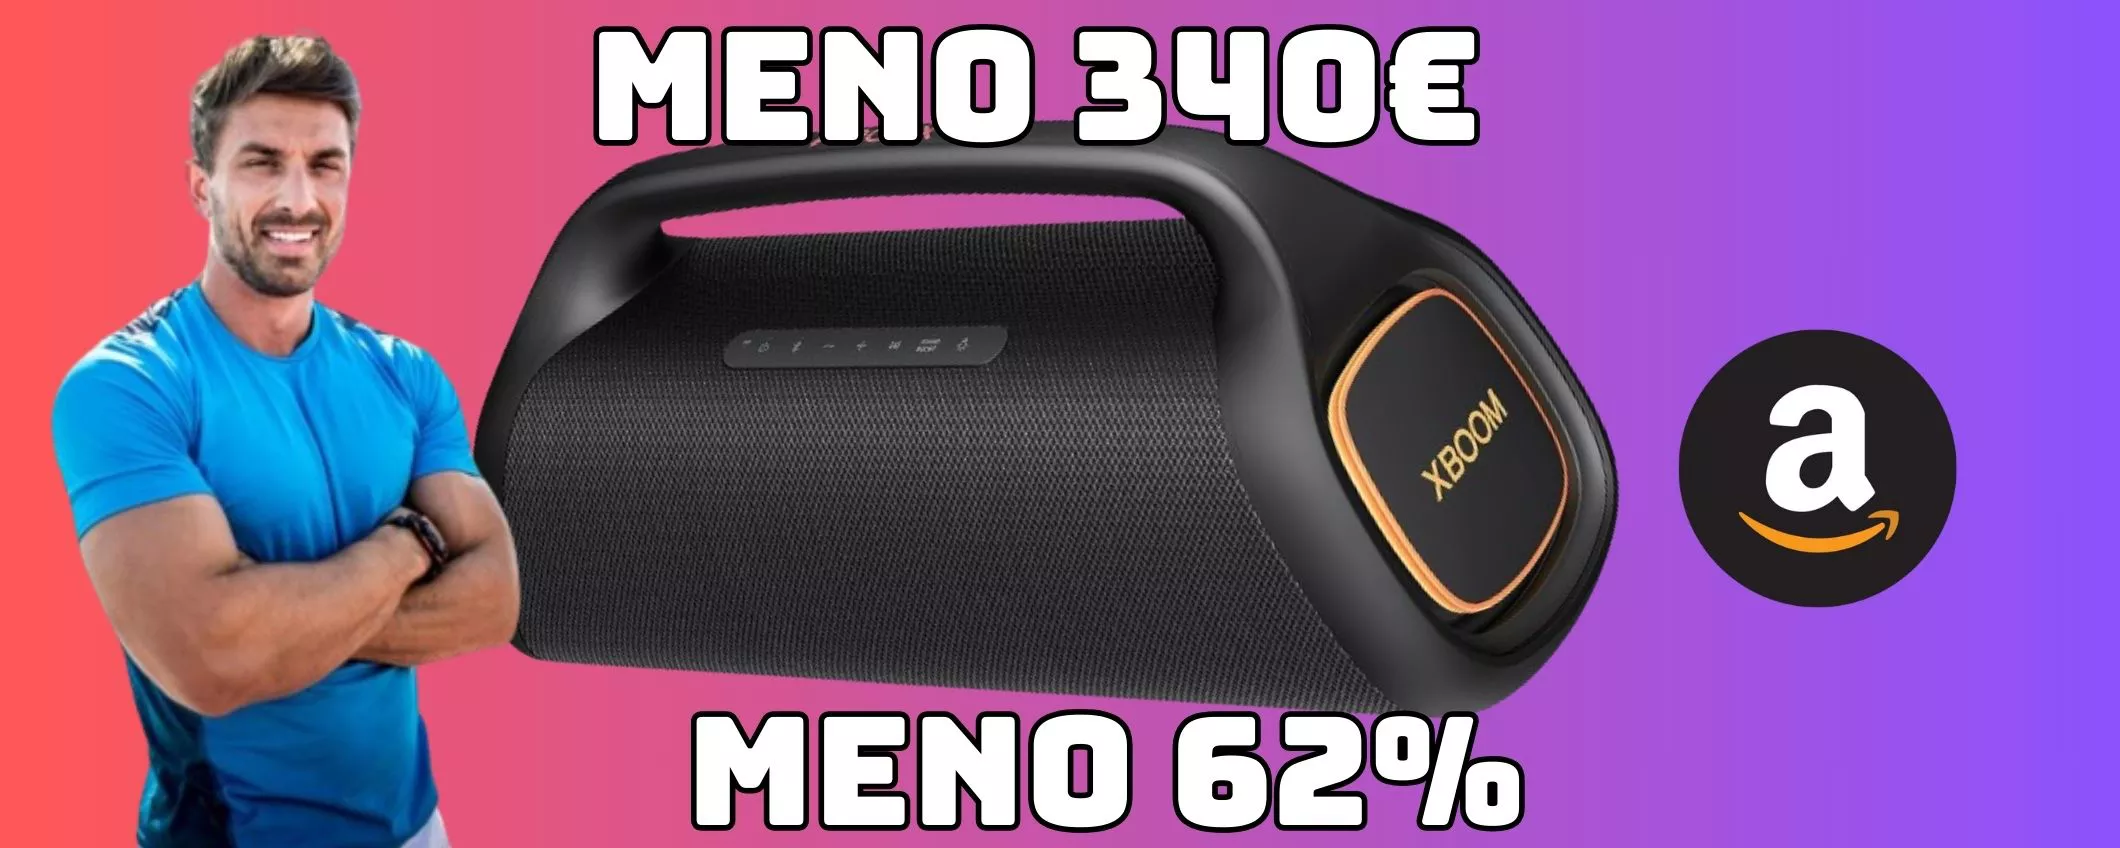 LG XBOOM Go XG9Q: la più potente delle maxi casse Bluetooth Premium con sconto esagerato MENO 340 euro!